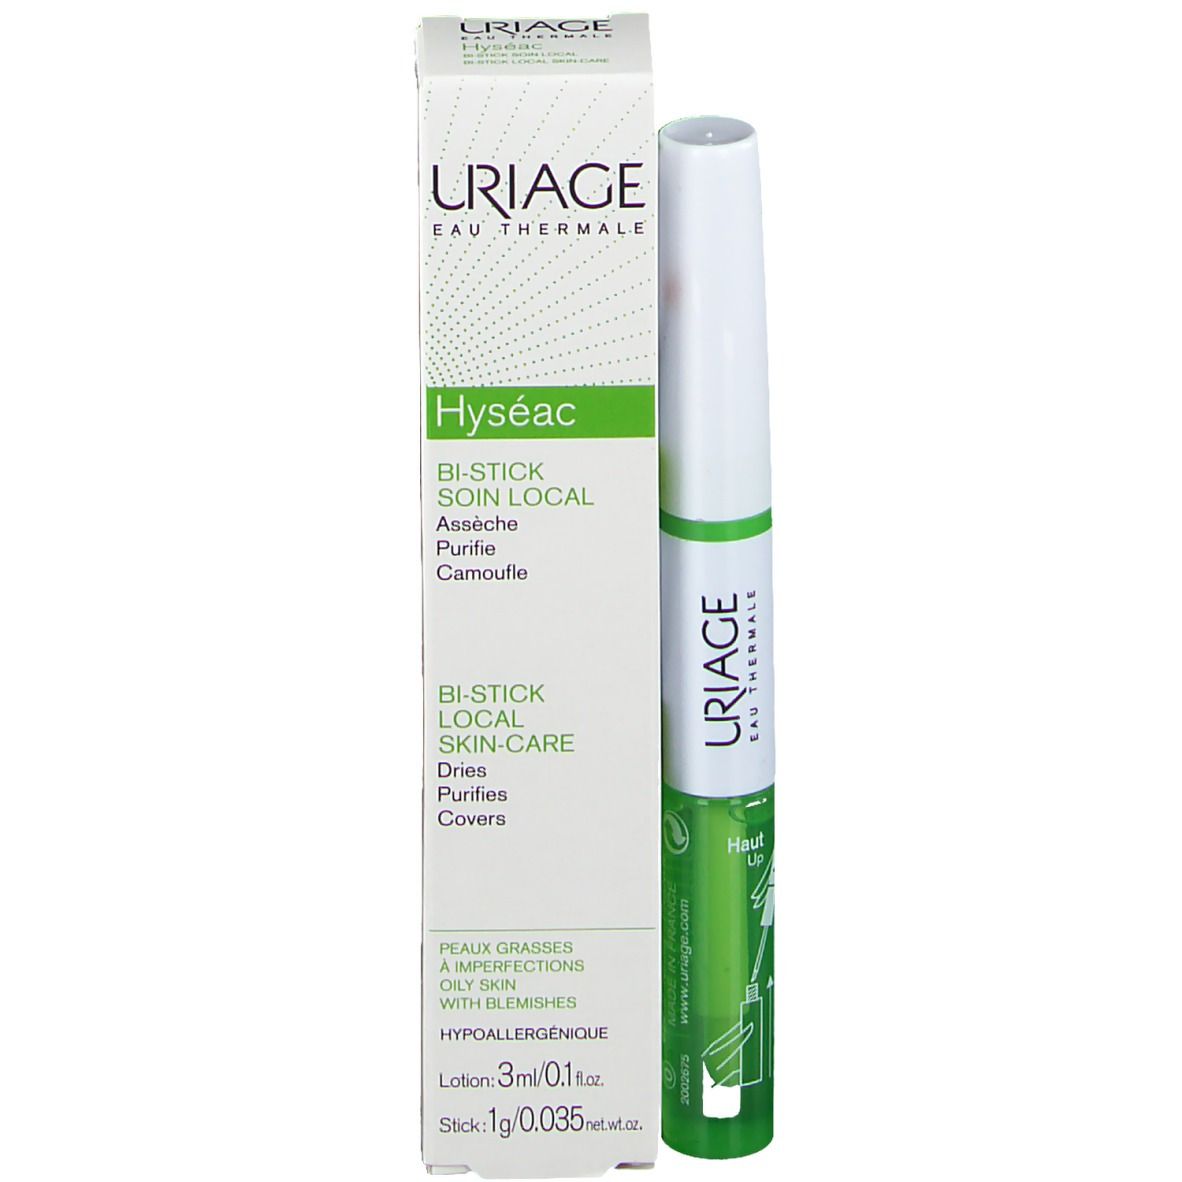 Uriage Hyseac Bi-Stick